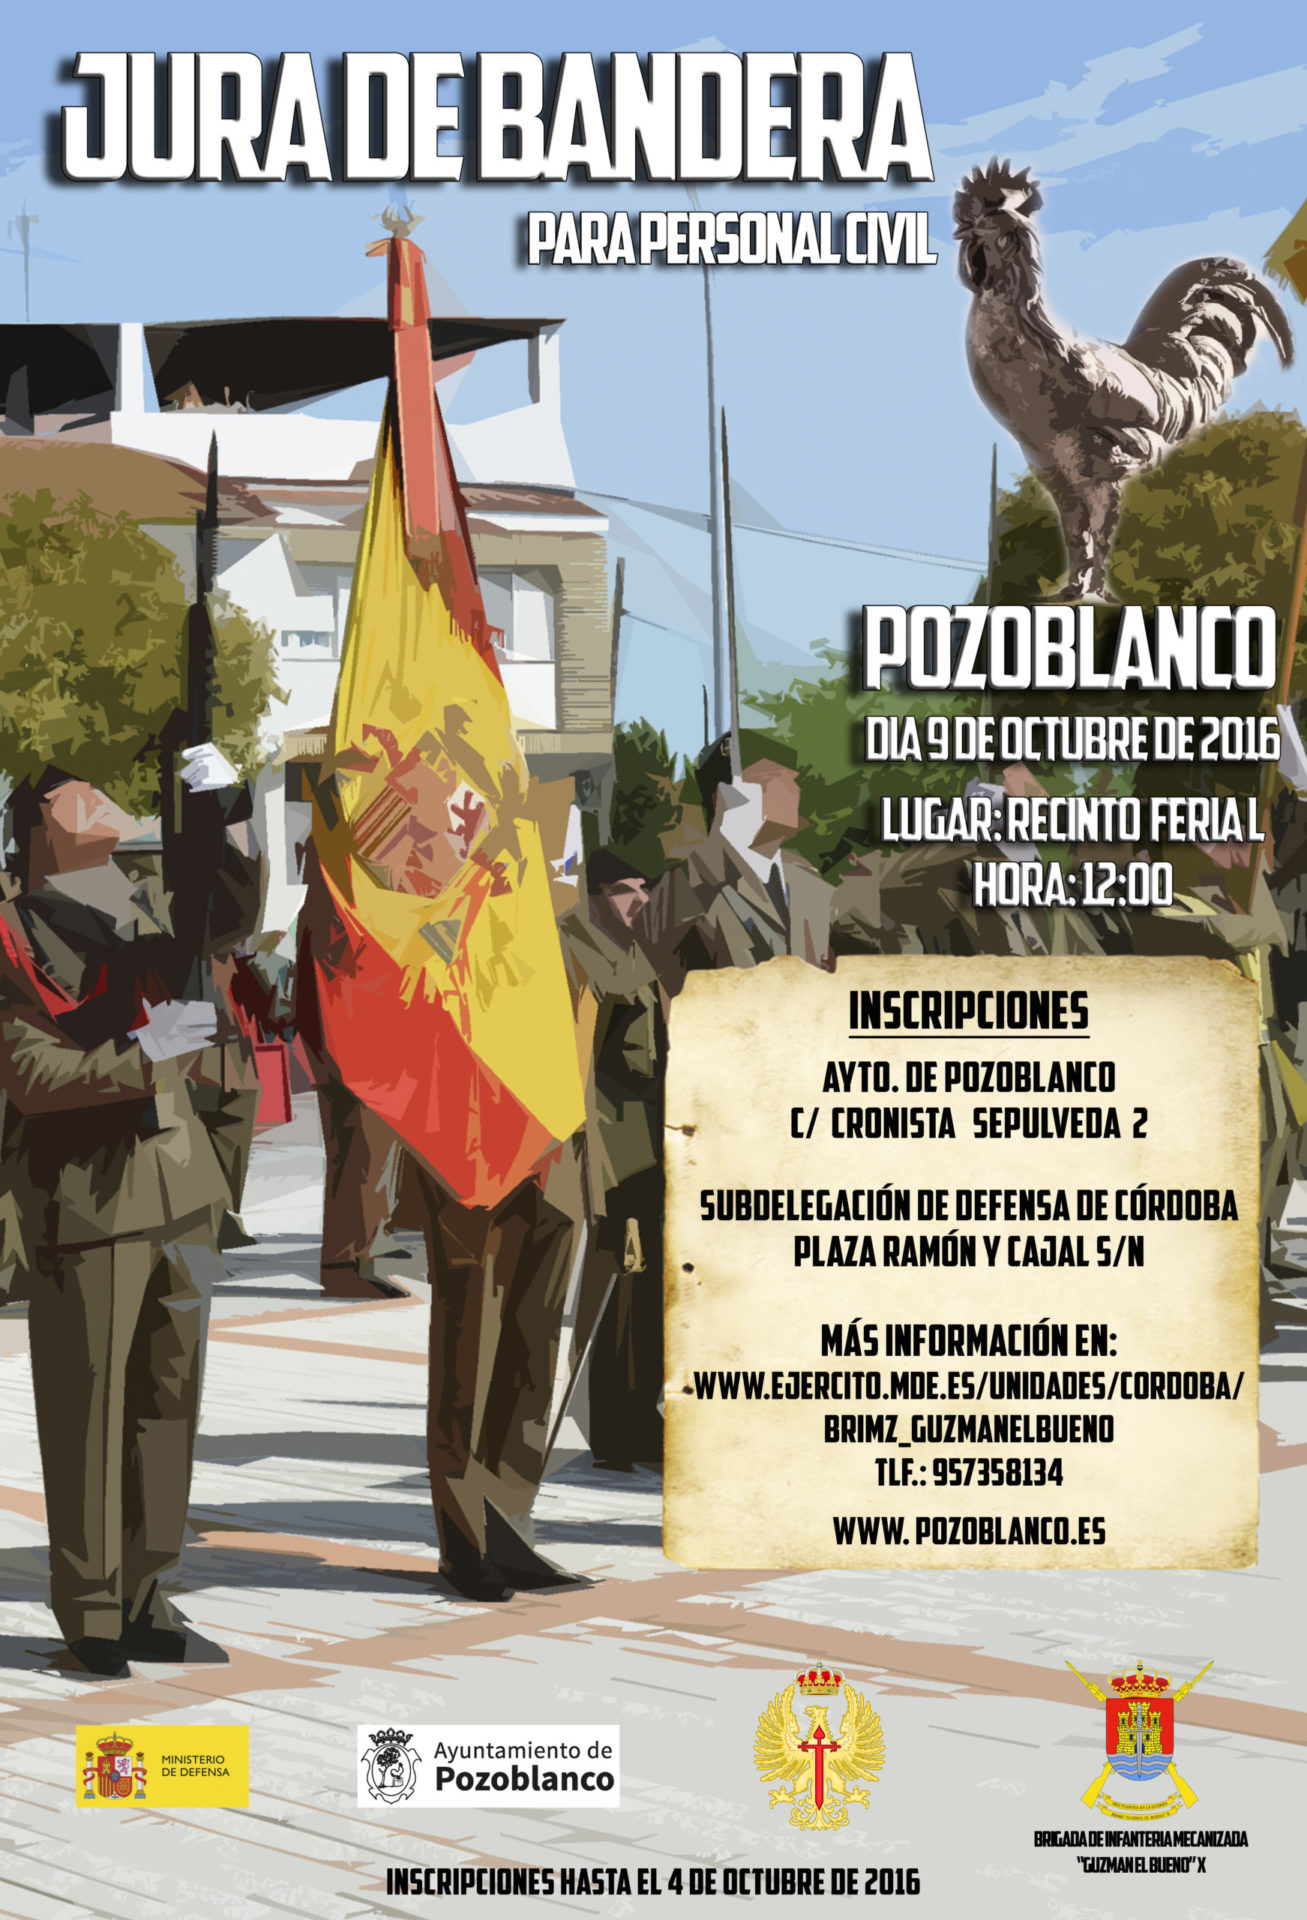 Jura de Bandera para personas civiles en Pozoblanco 1